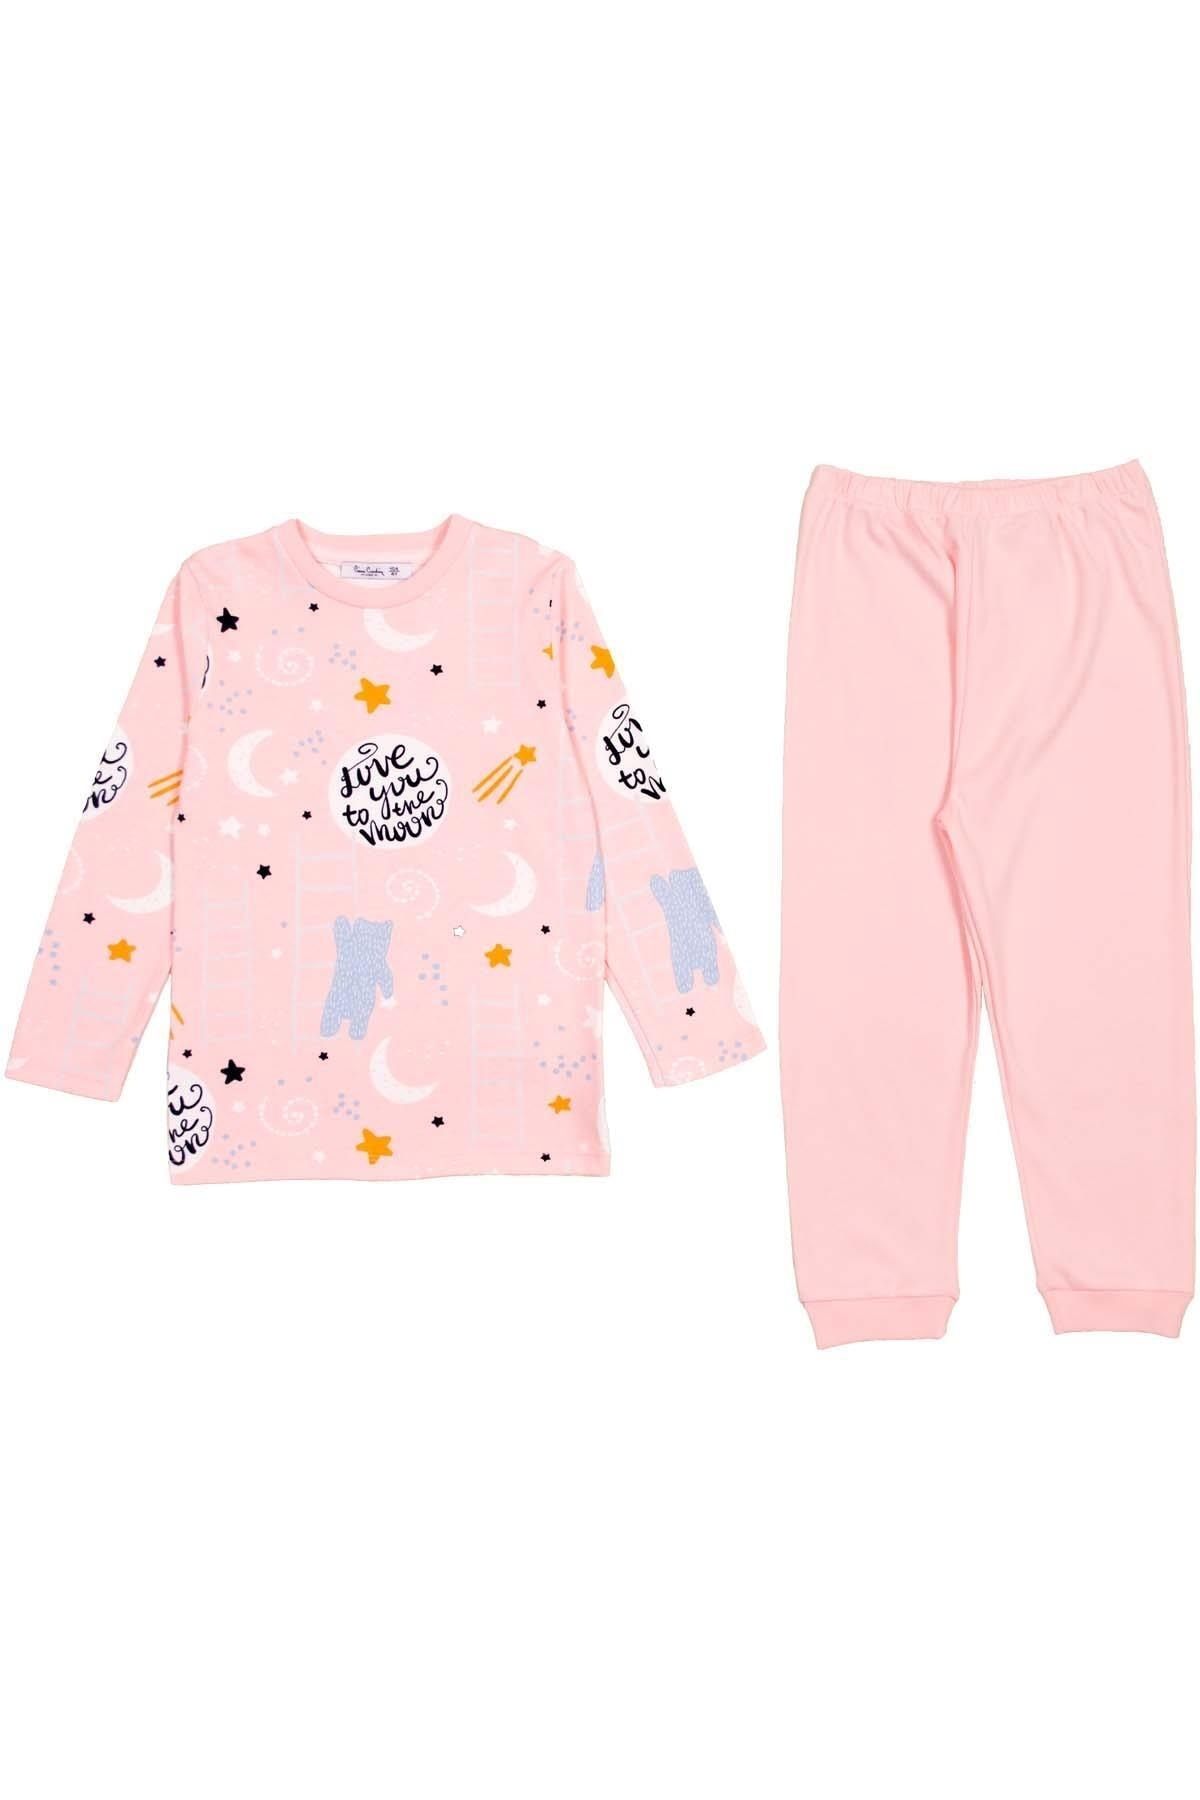 Pierre Cardin Çocuk Pijama Takımı 302284